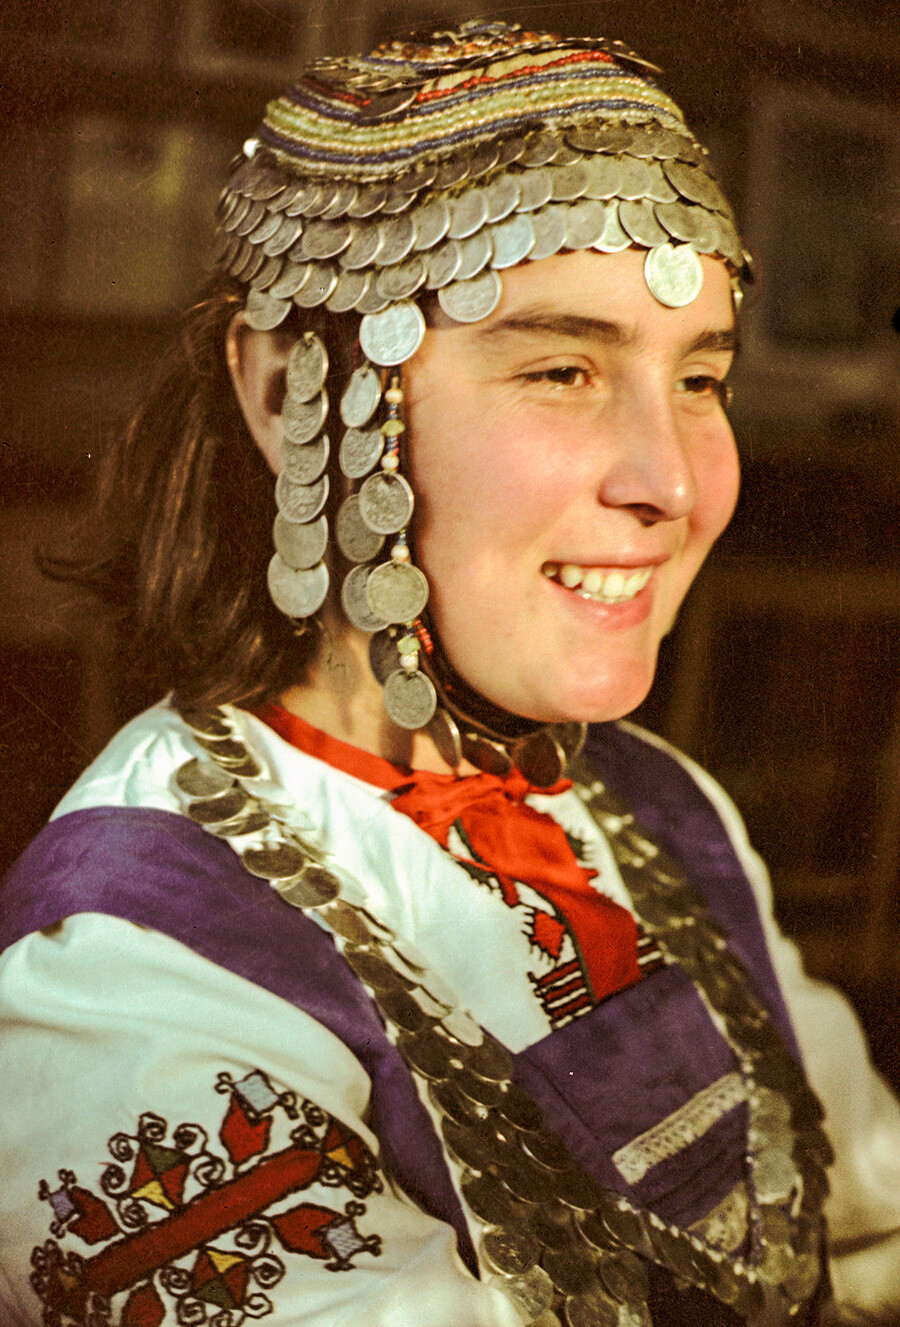 Garota de Tchebokssari com traje local.